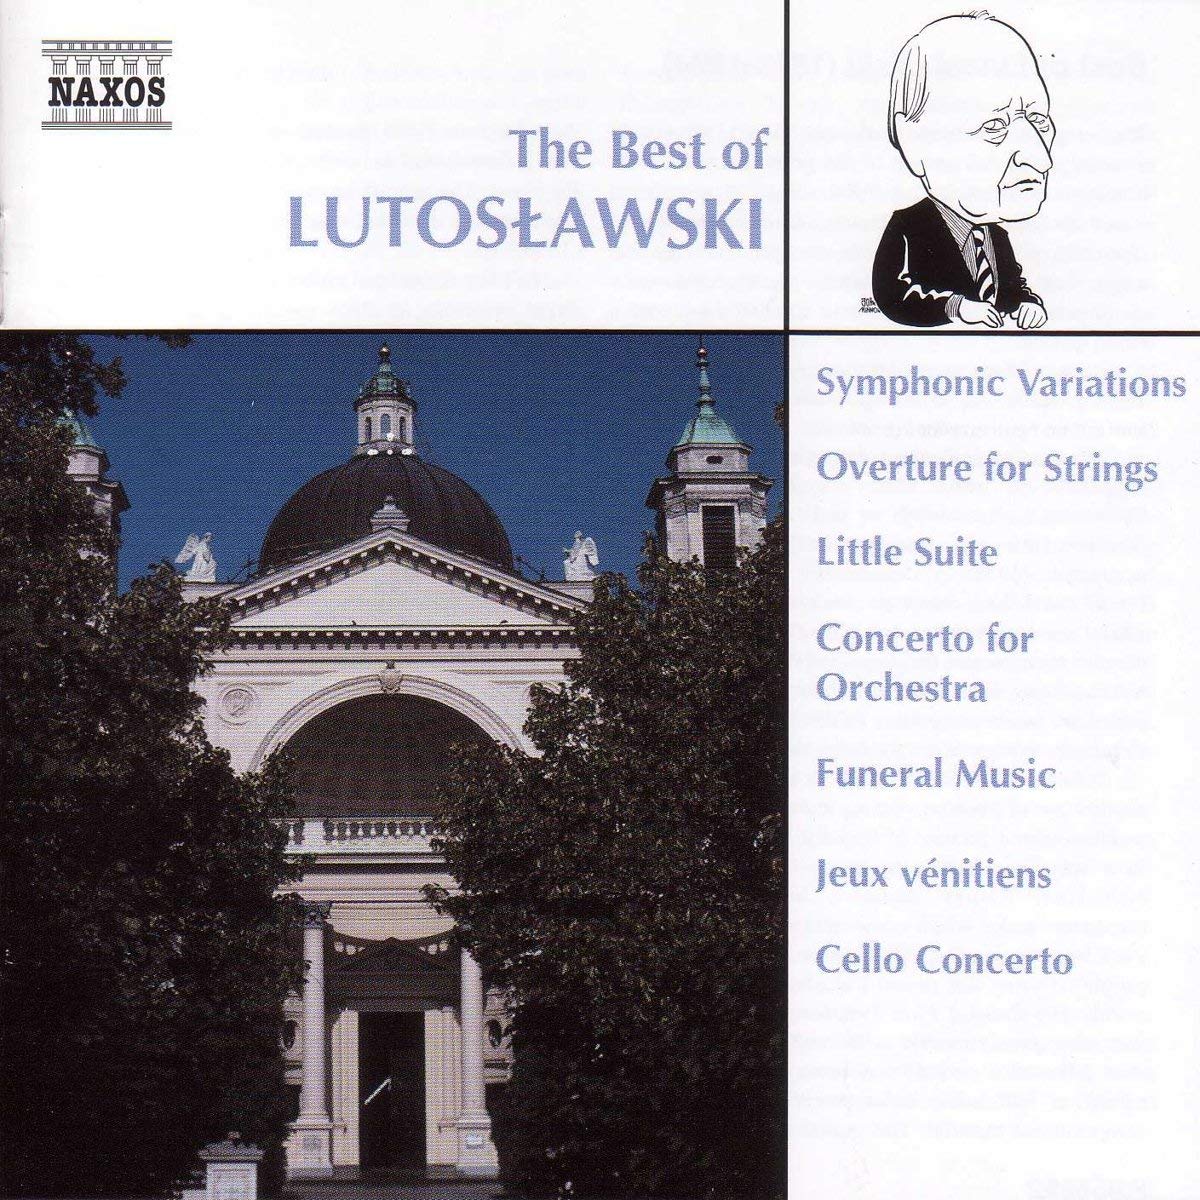 The Best of Lutosławski